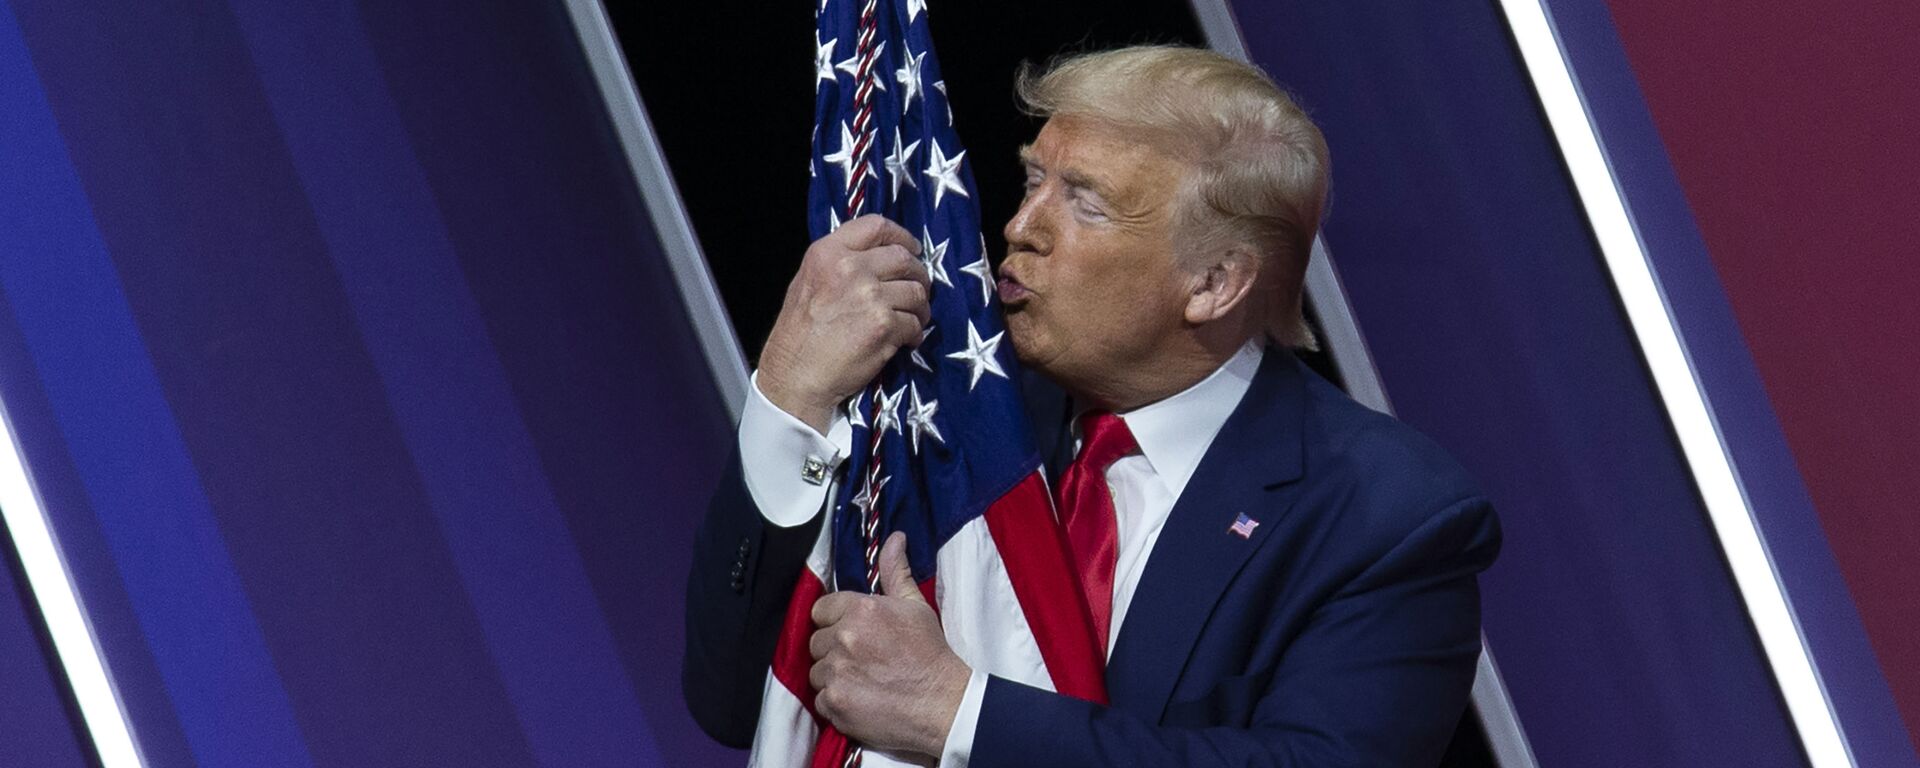 Дональд Трамп целует американский флаг - Sputnik Узбекистан, 1920, 27.02.2021